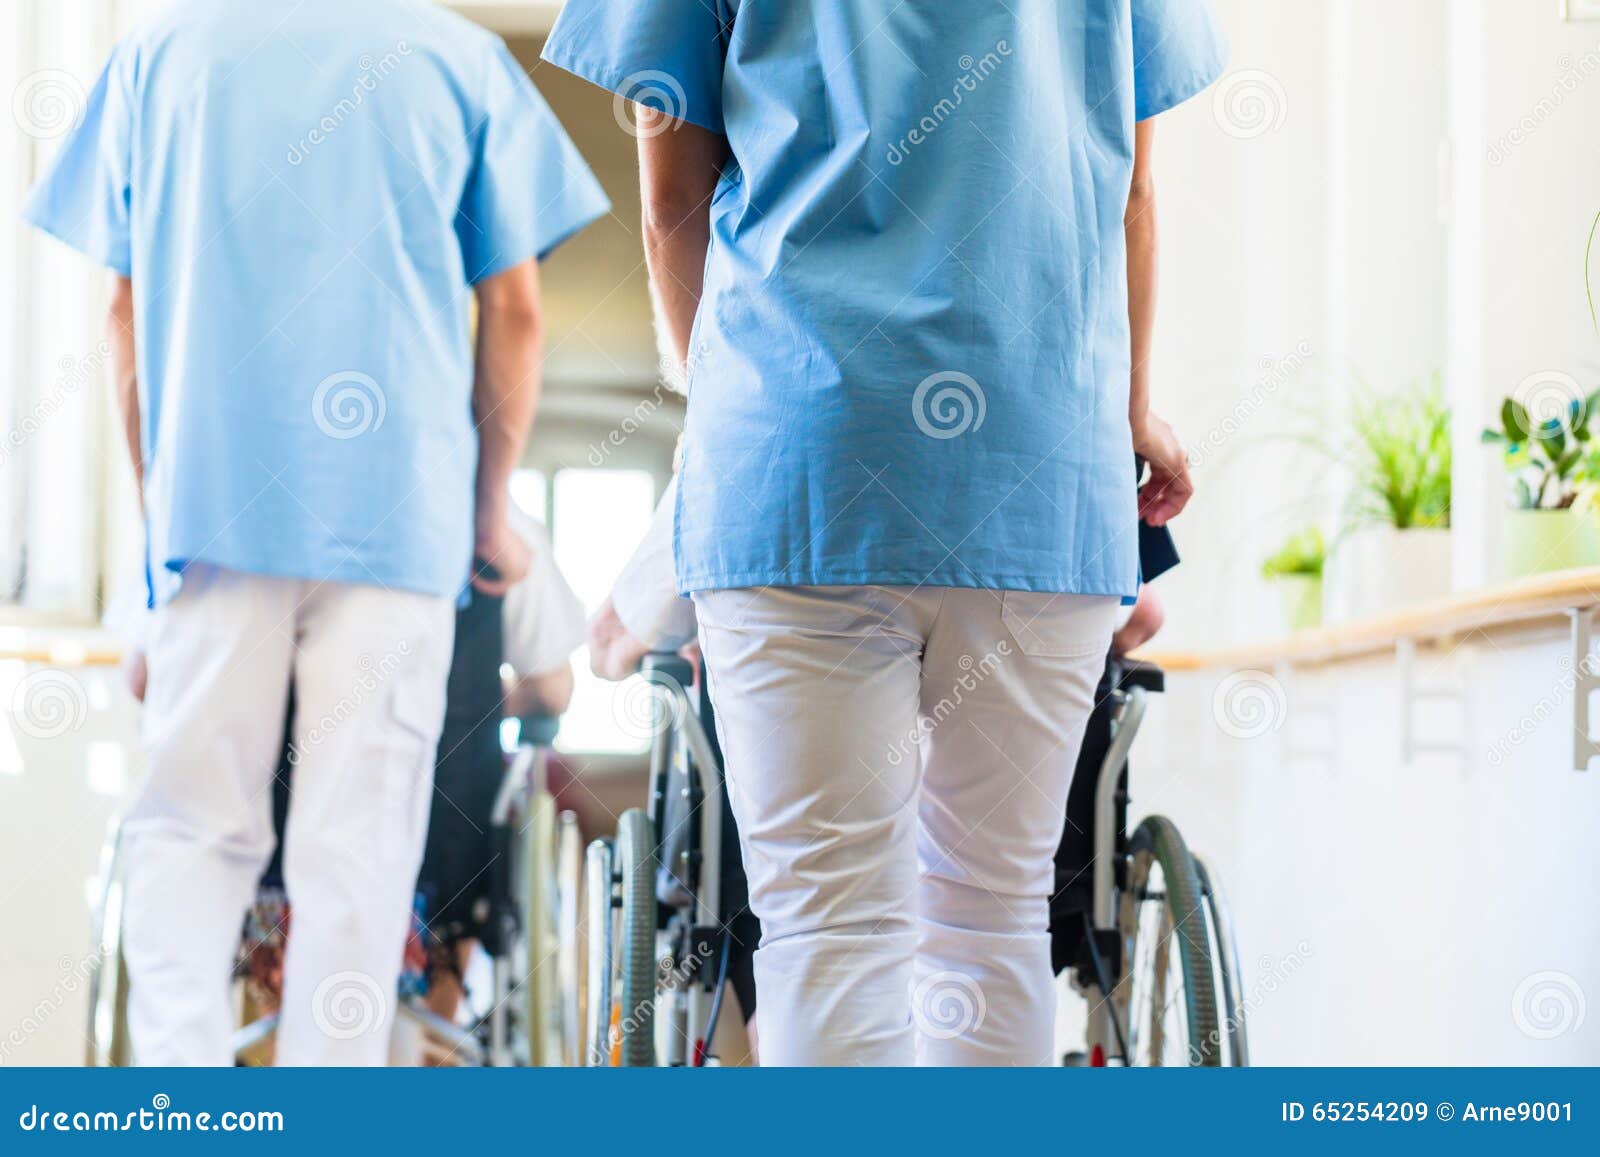 nurses pushing seniors in wheelchair thru nursing home